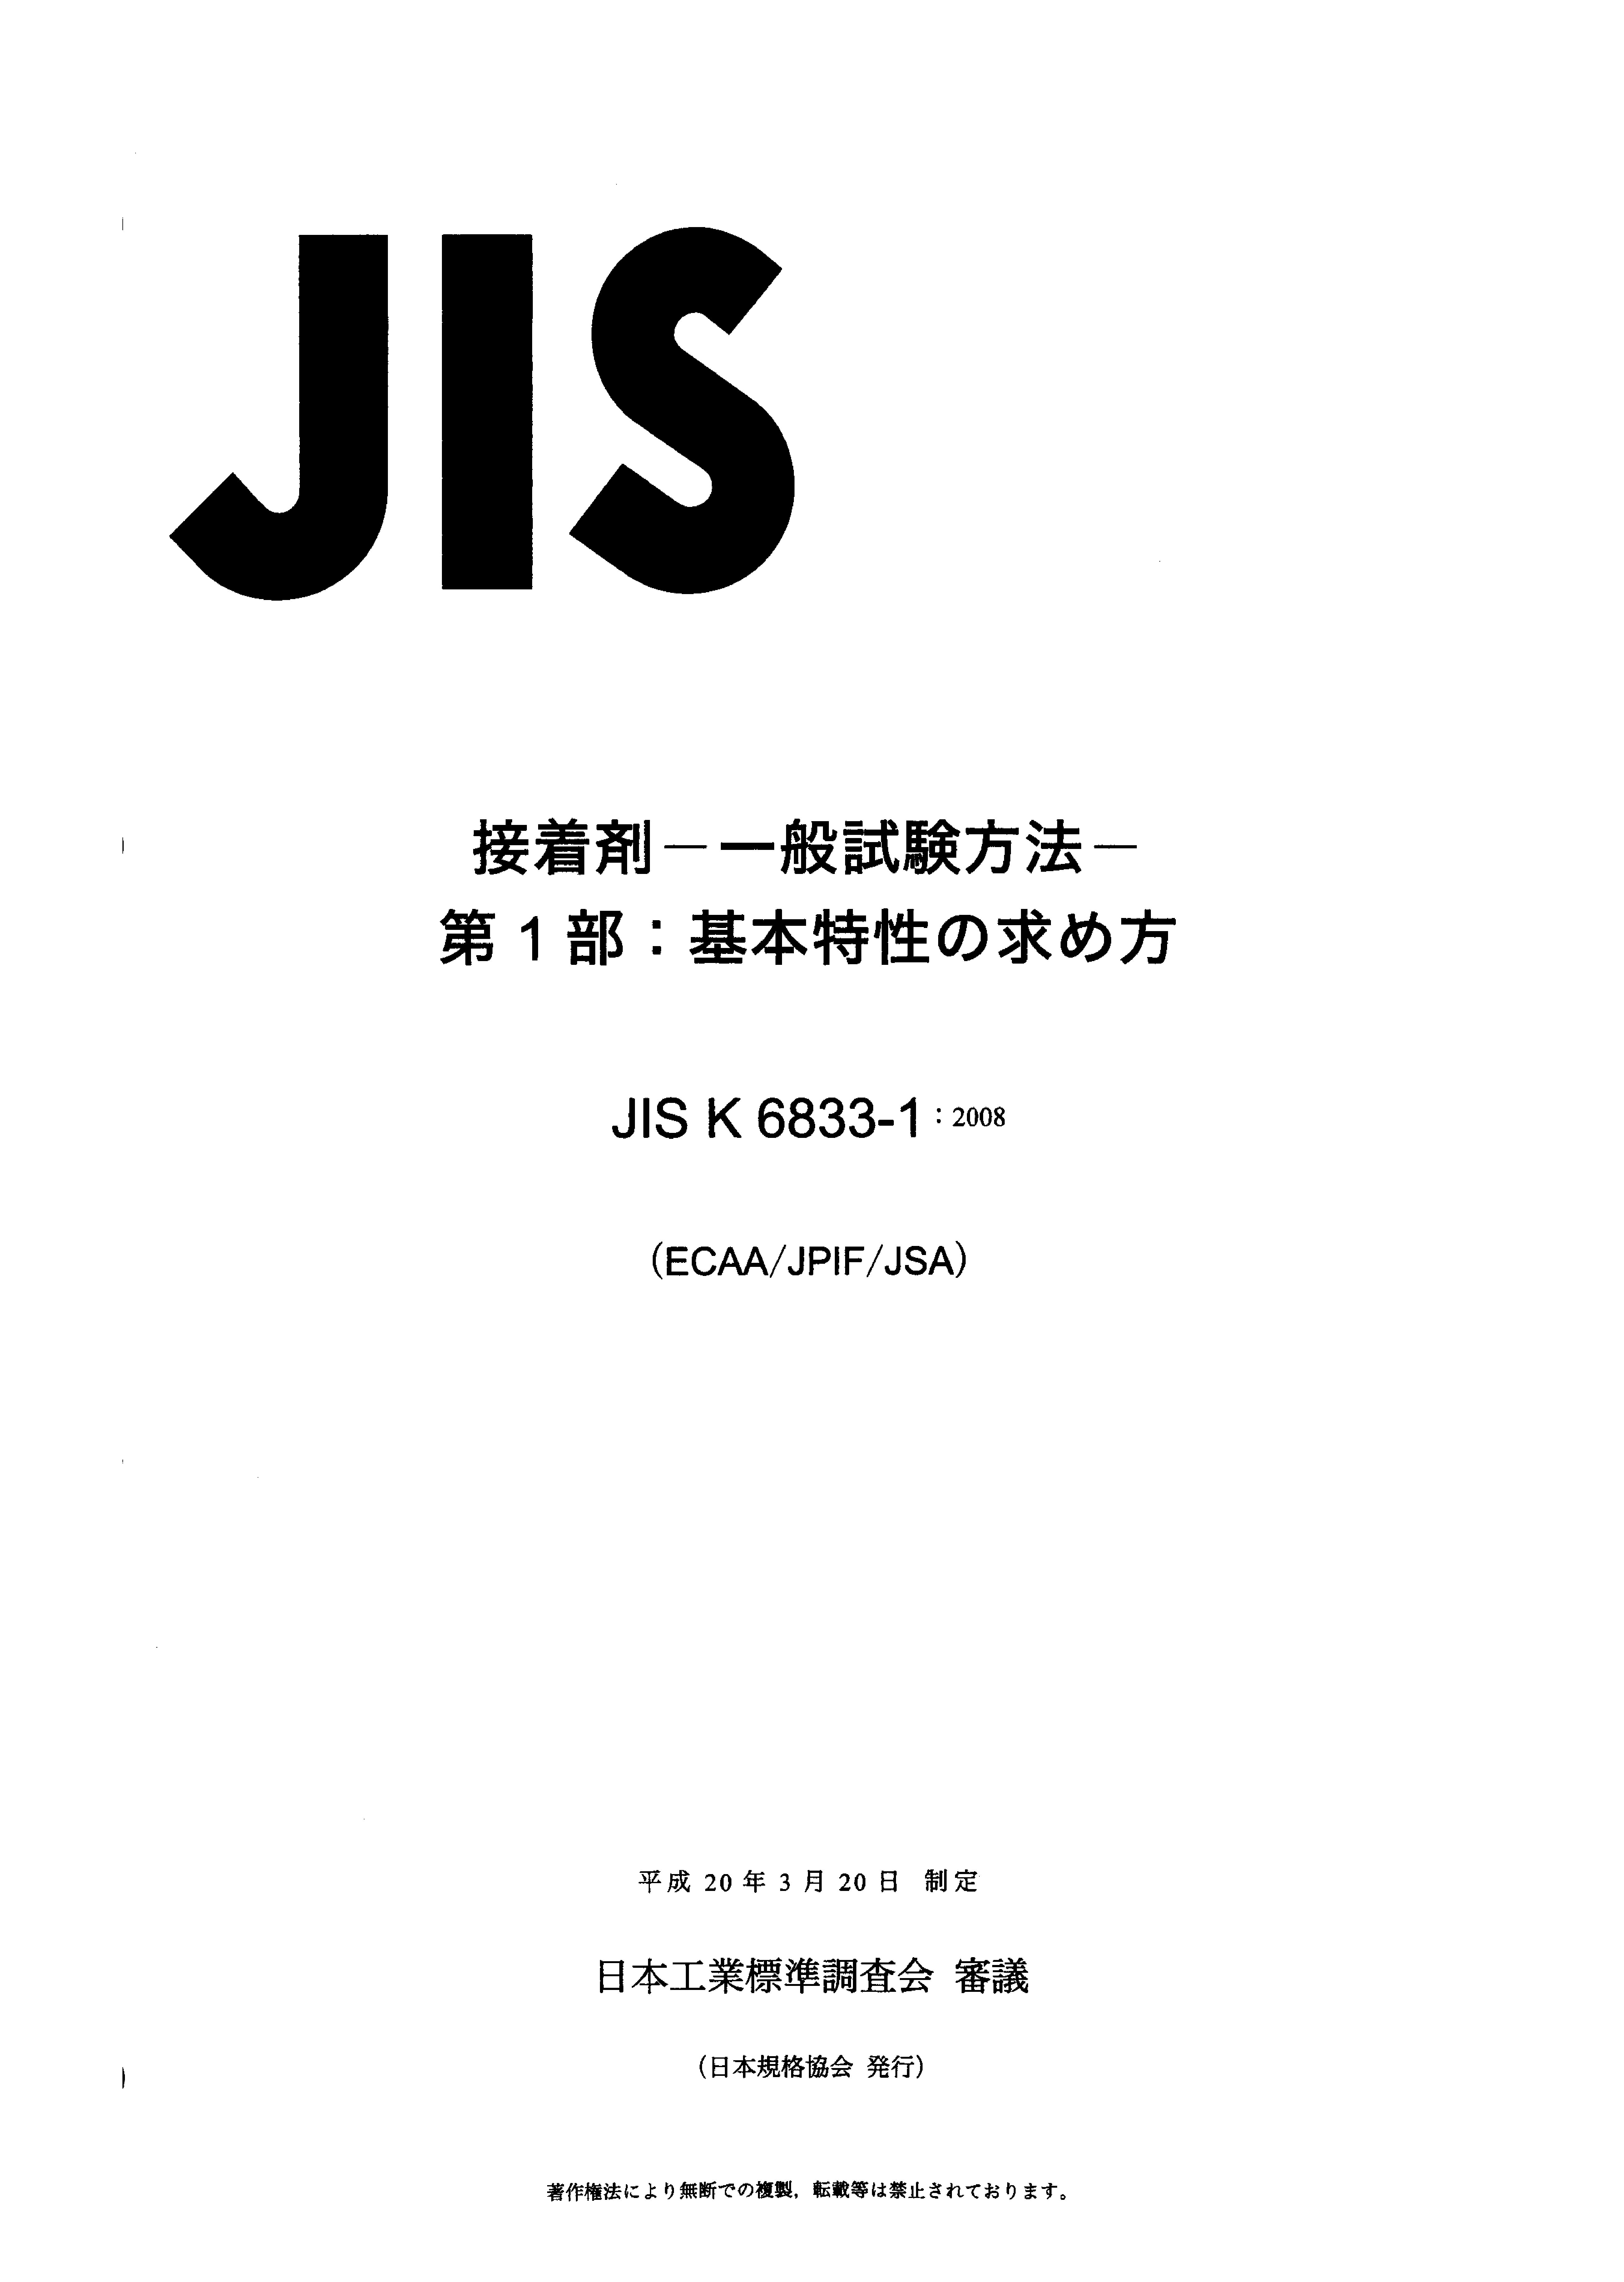 JIS K 6833-1:2008封面图